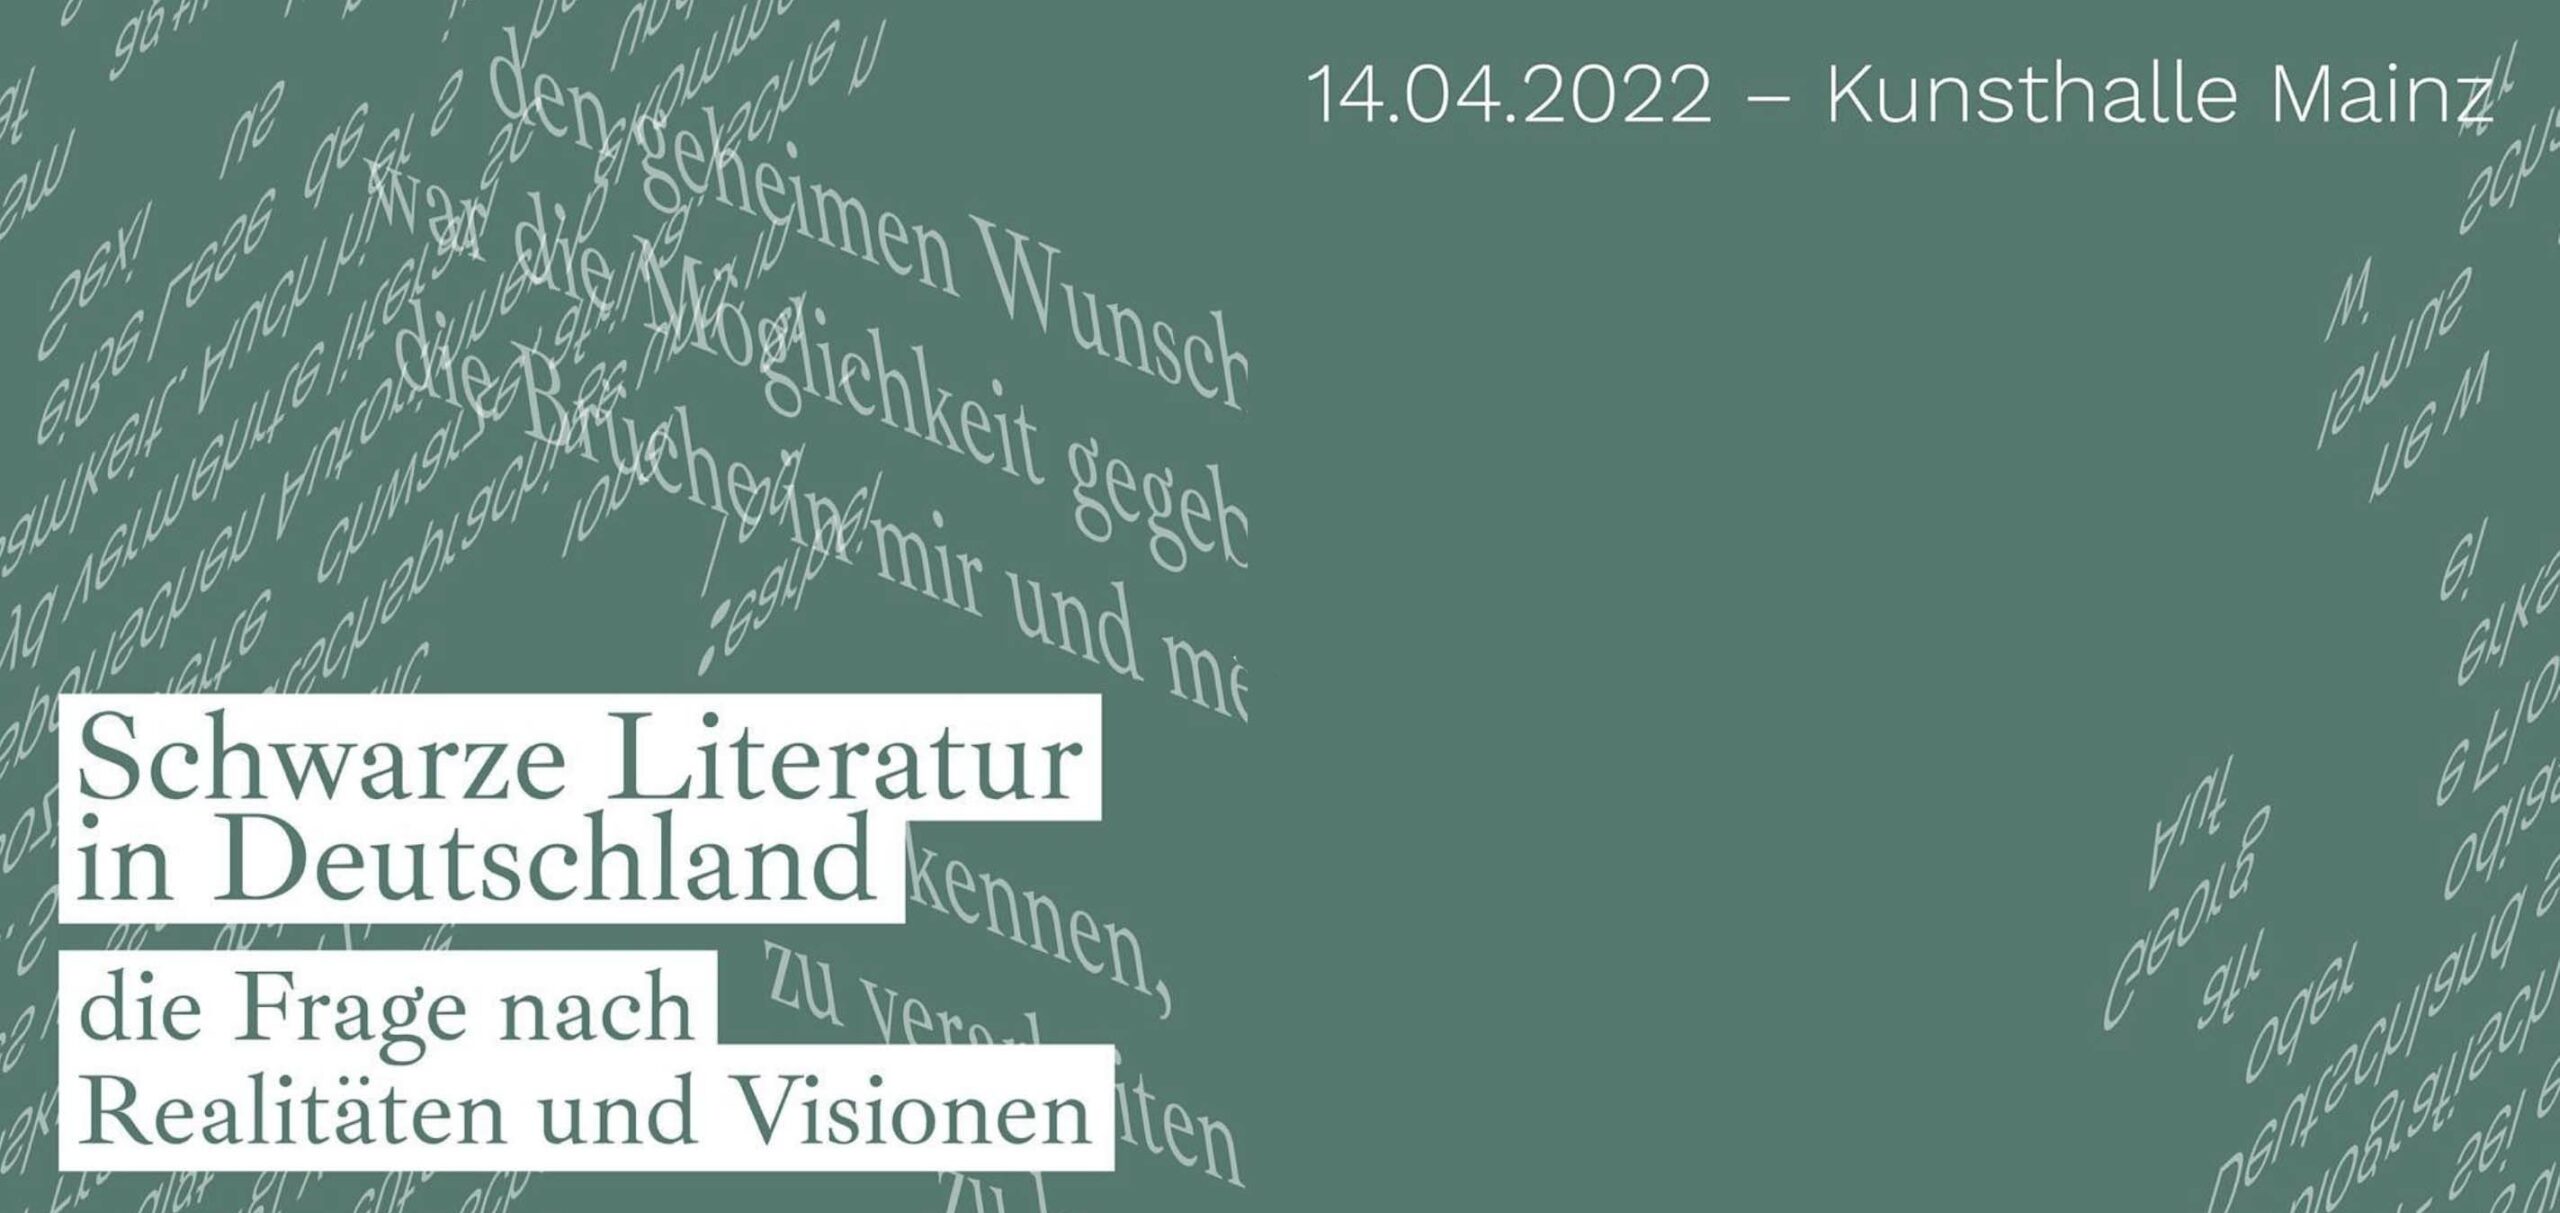 Schwarze-Literatur-in-Deutschland-1140-x-540